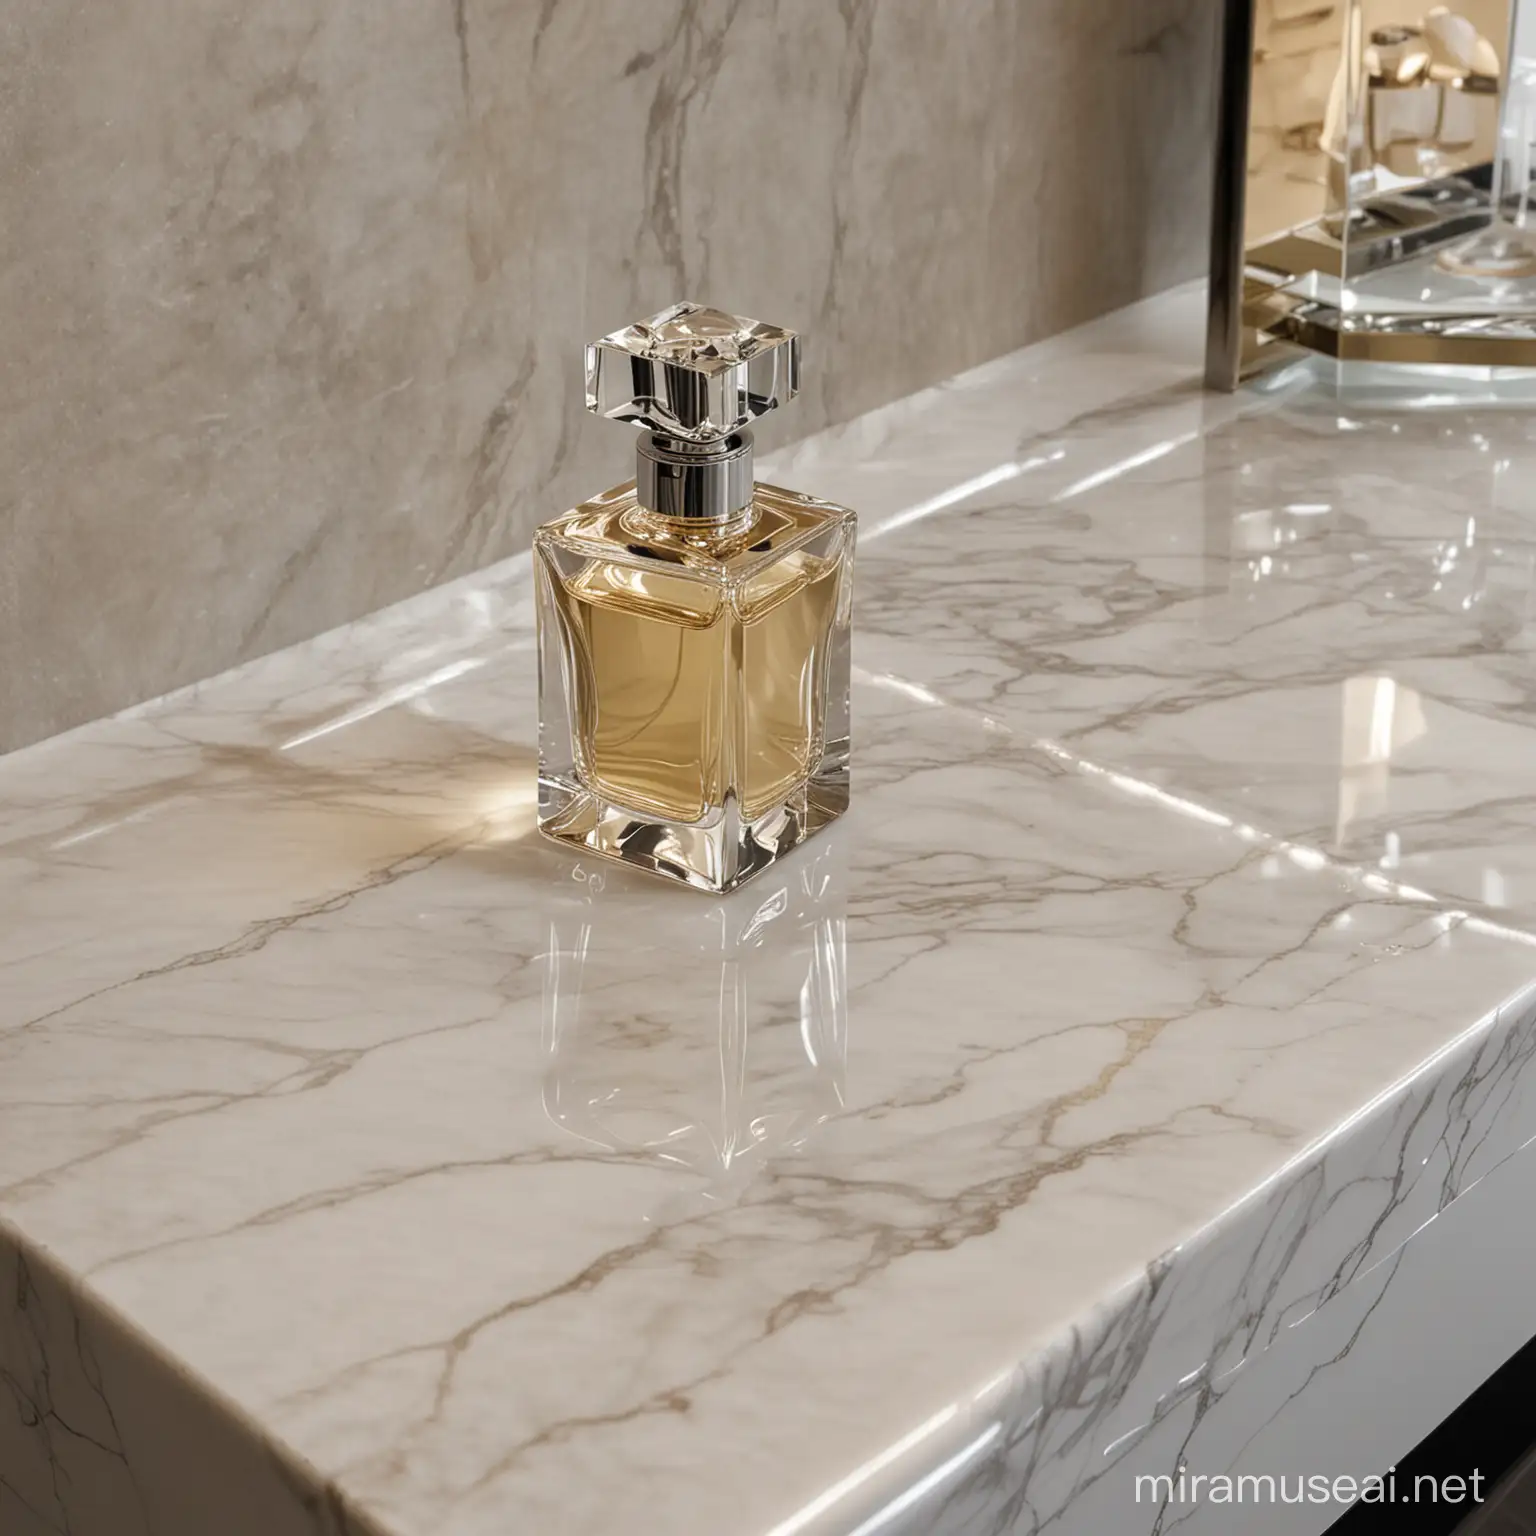 Elegant Perfume Display on Sophisticated Marble Countertop